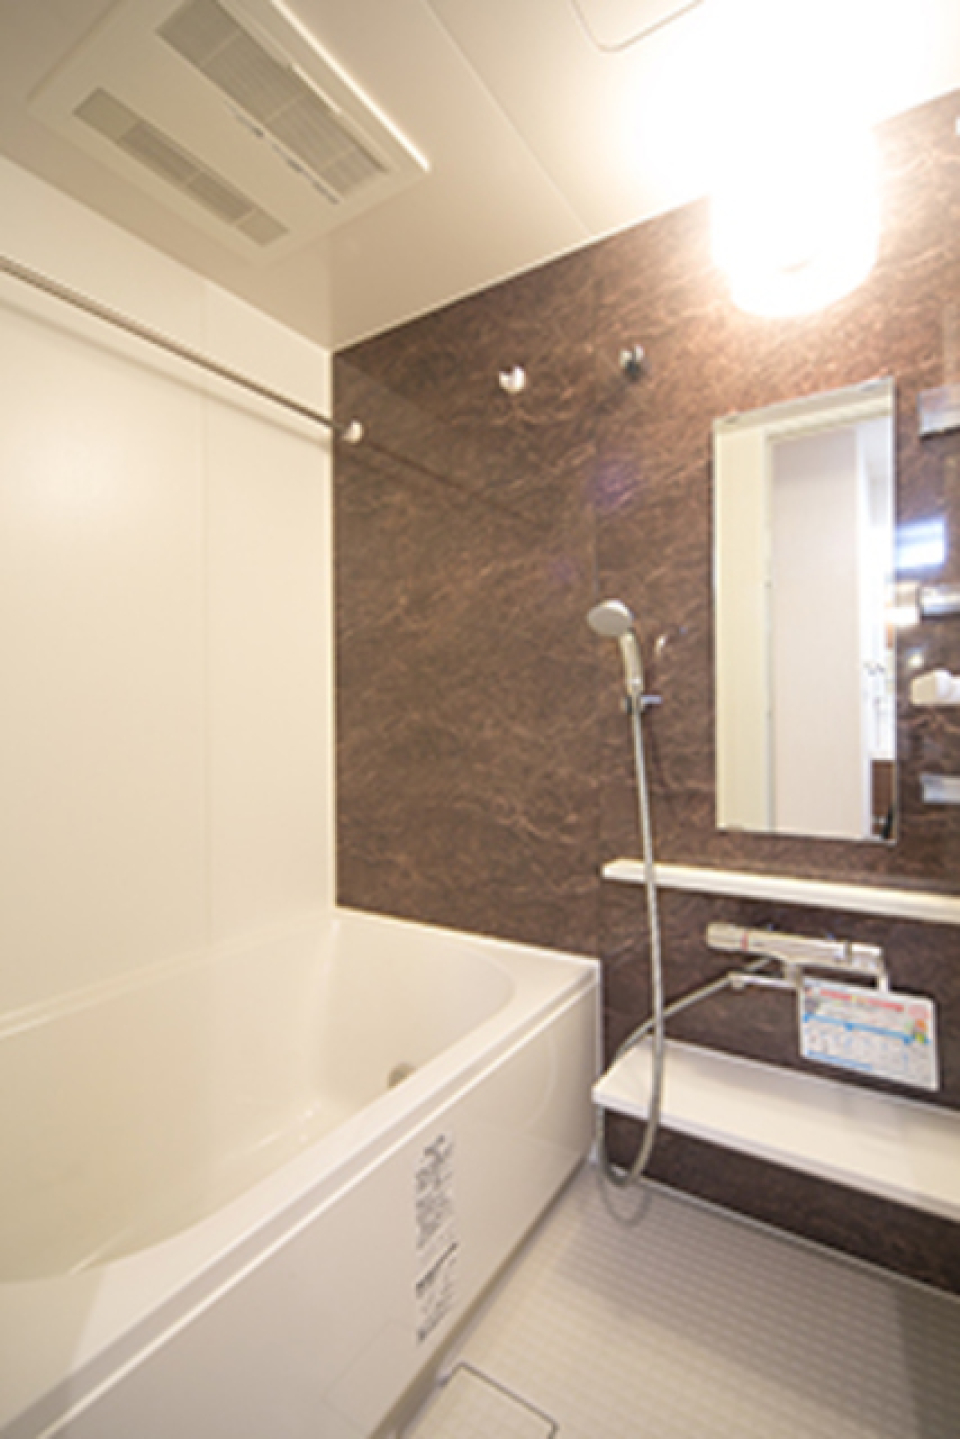 ブラウンのパネルが導入された浴室です。※写真は同タイプ住戸です。